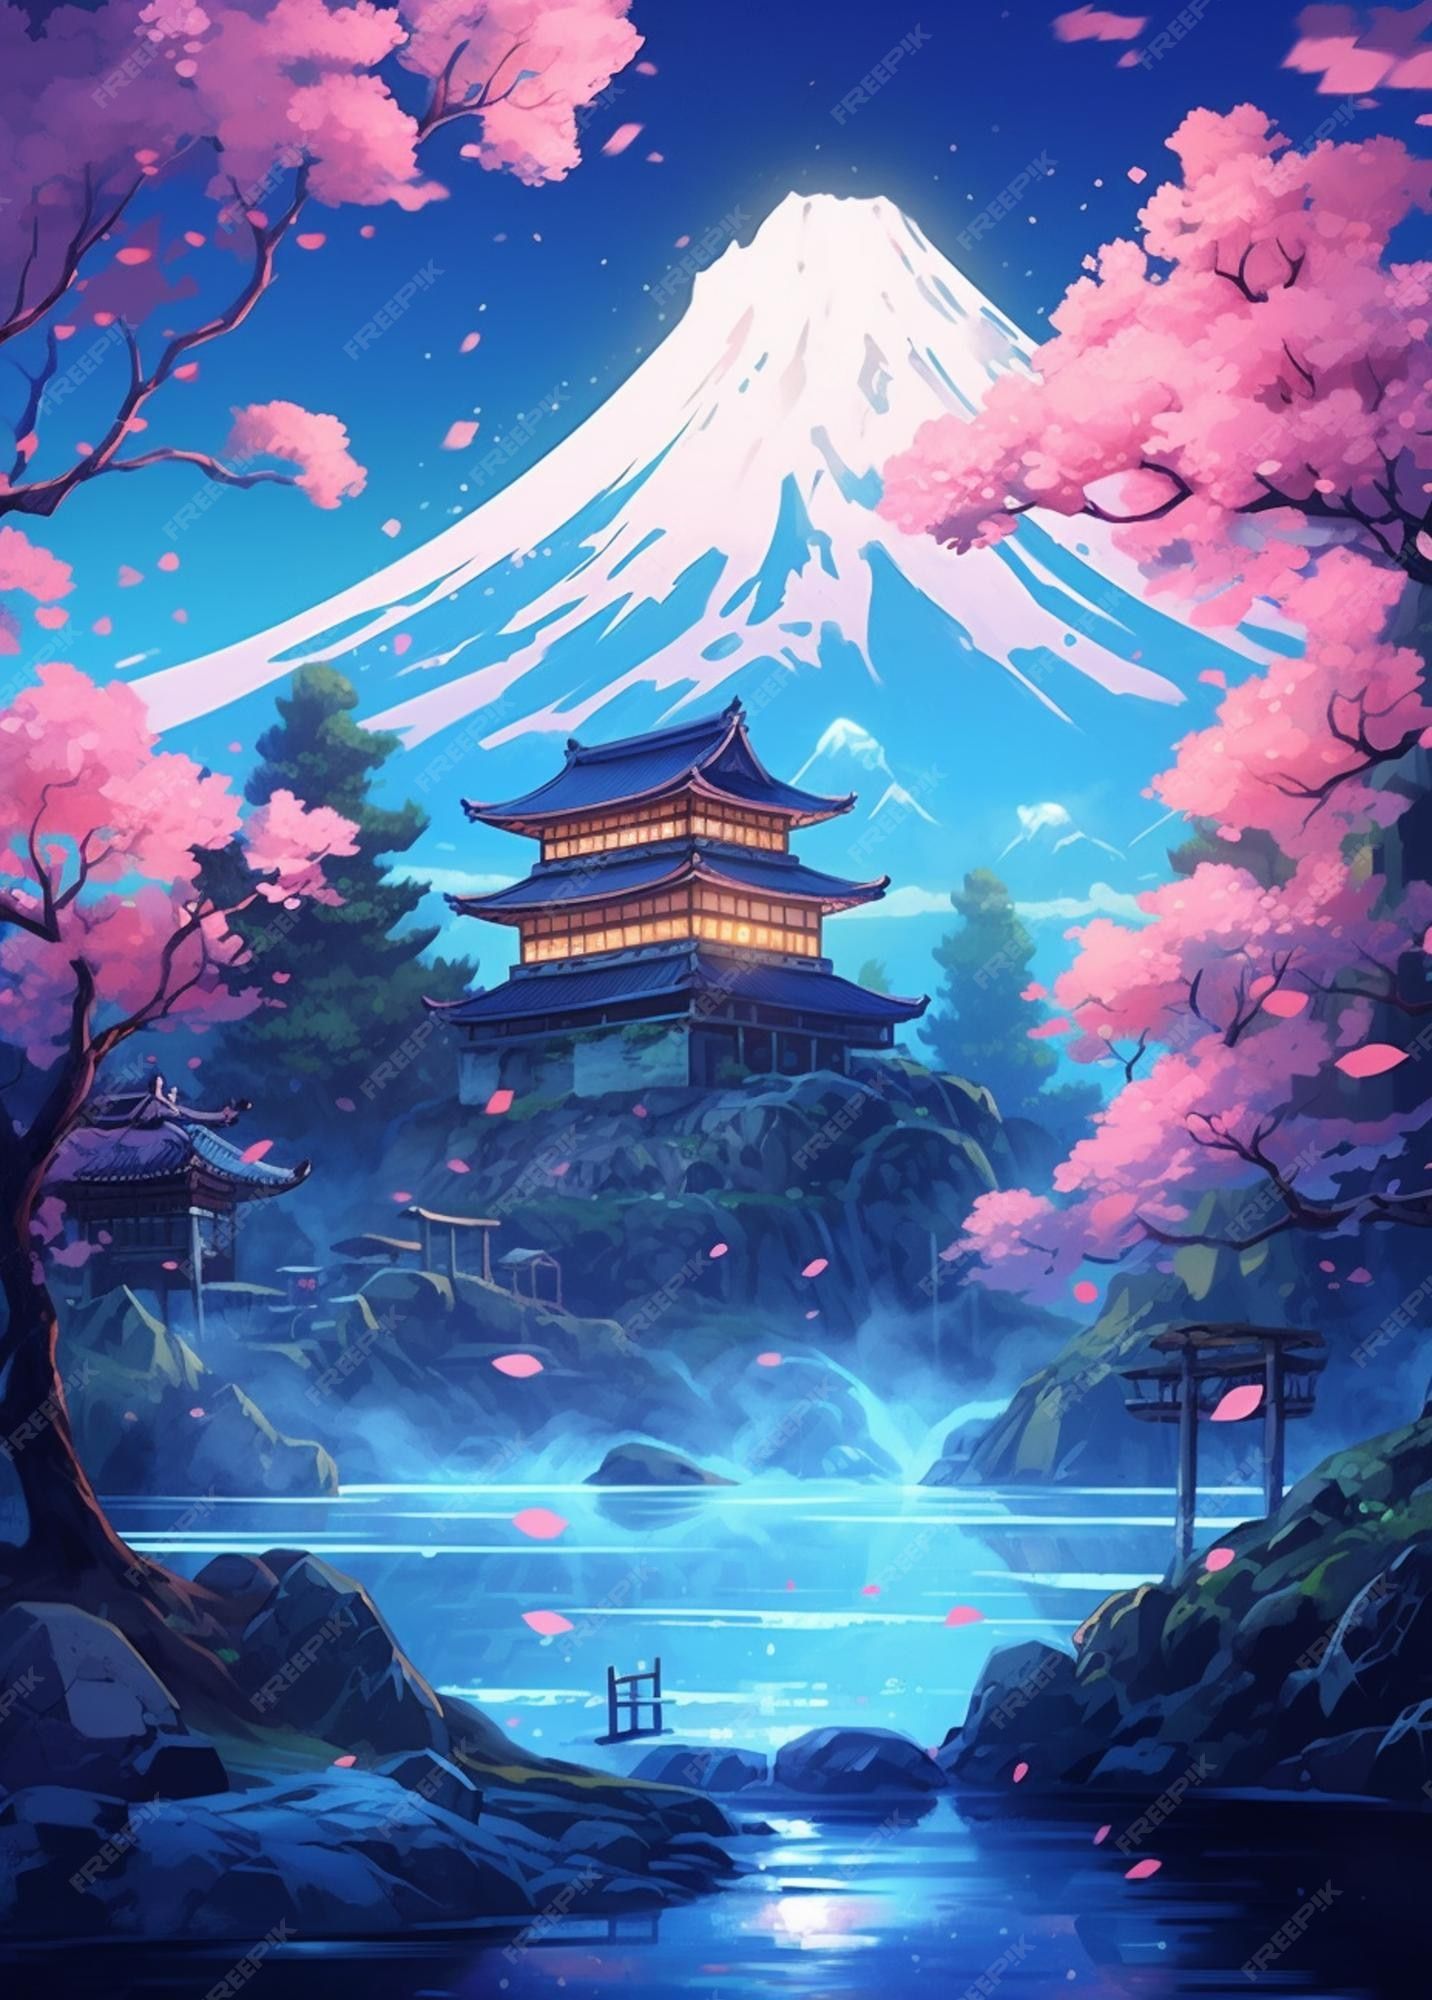 Japan Anime Background Image